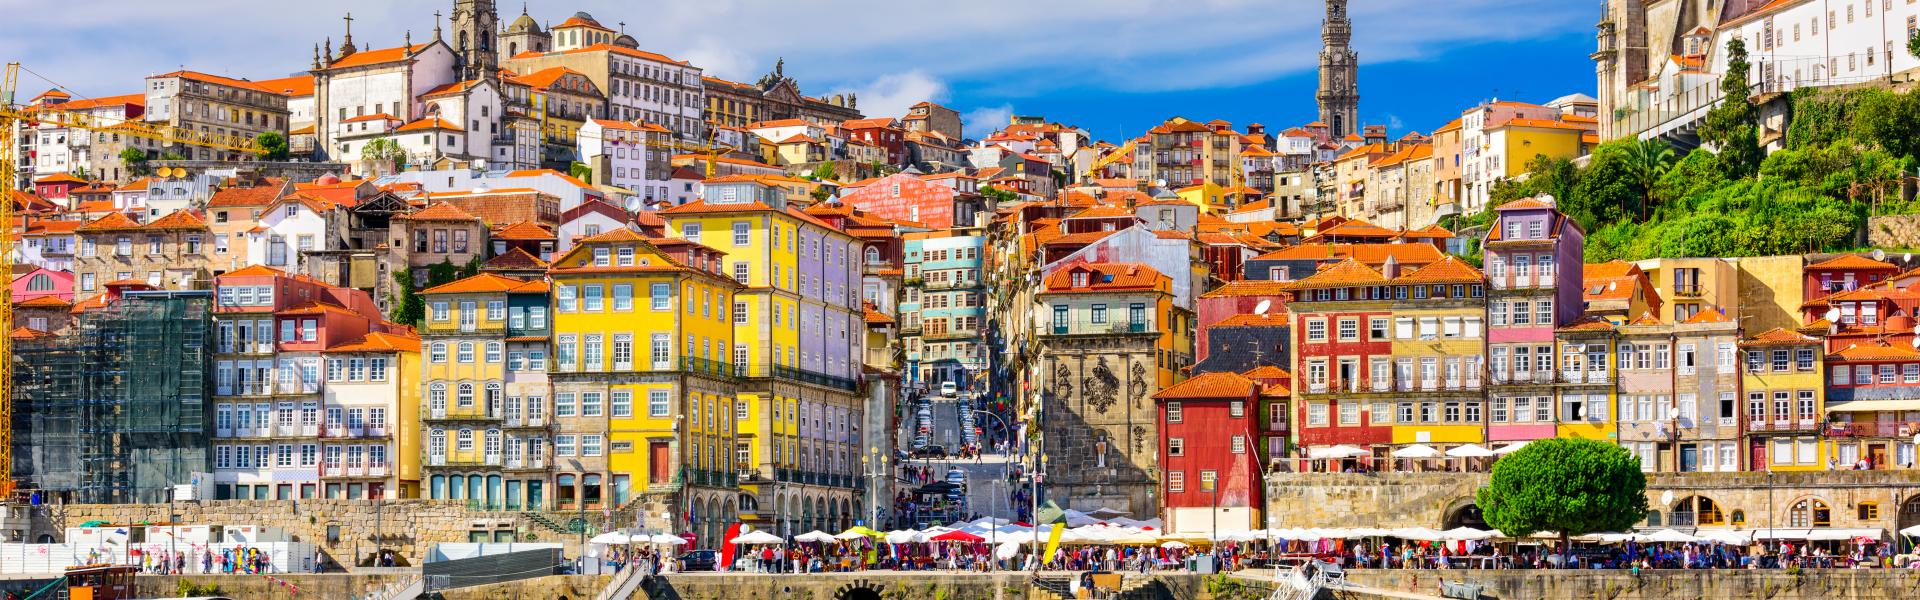 Ferienwohnungen & Ferienhäuser für Urlaub in Porto - Casamundo